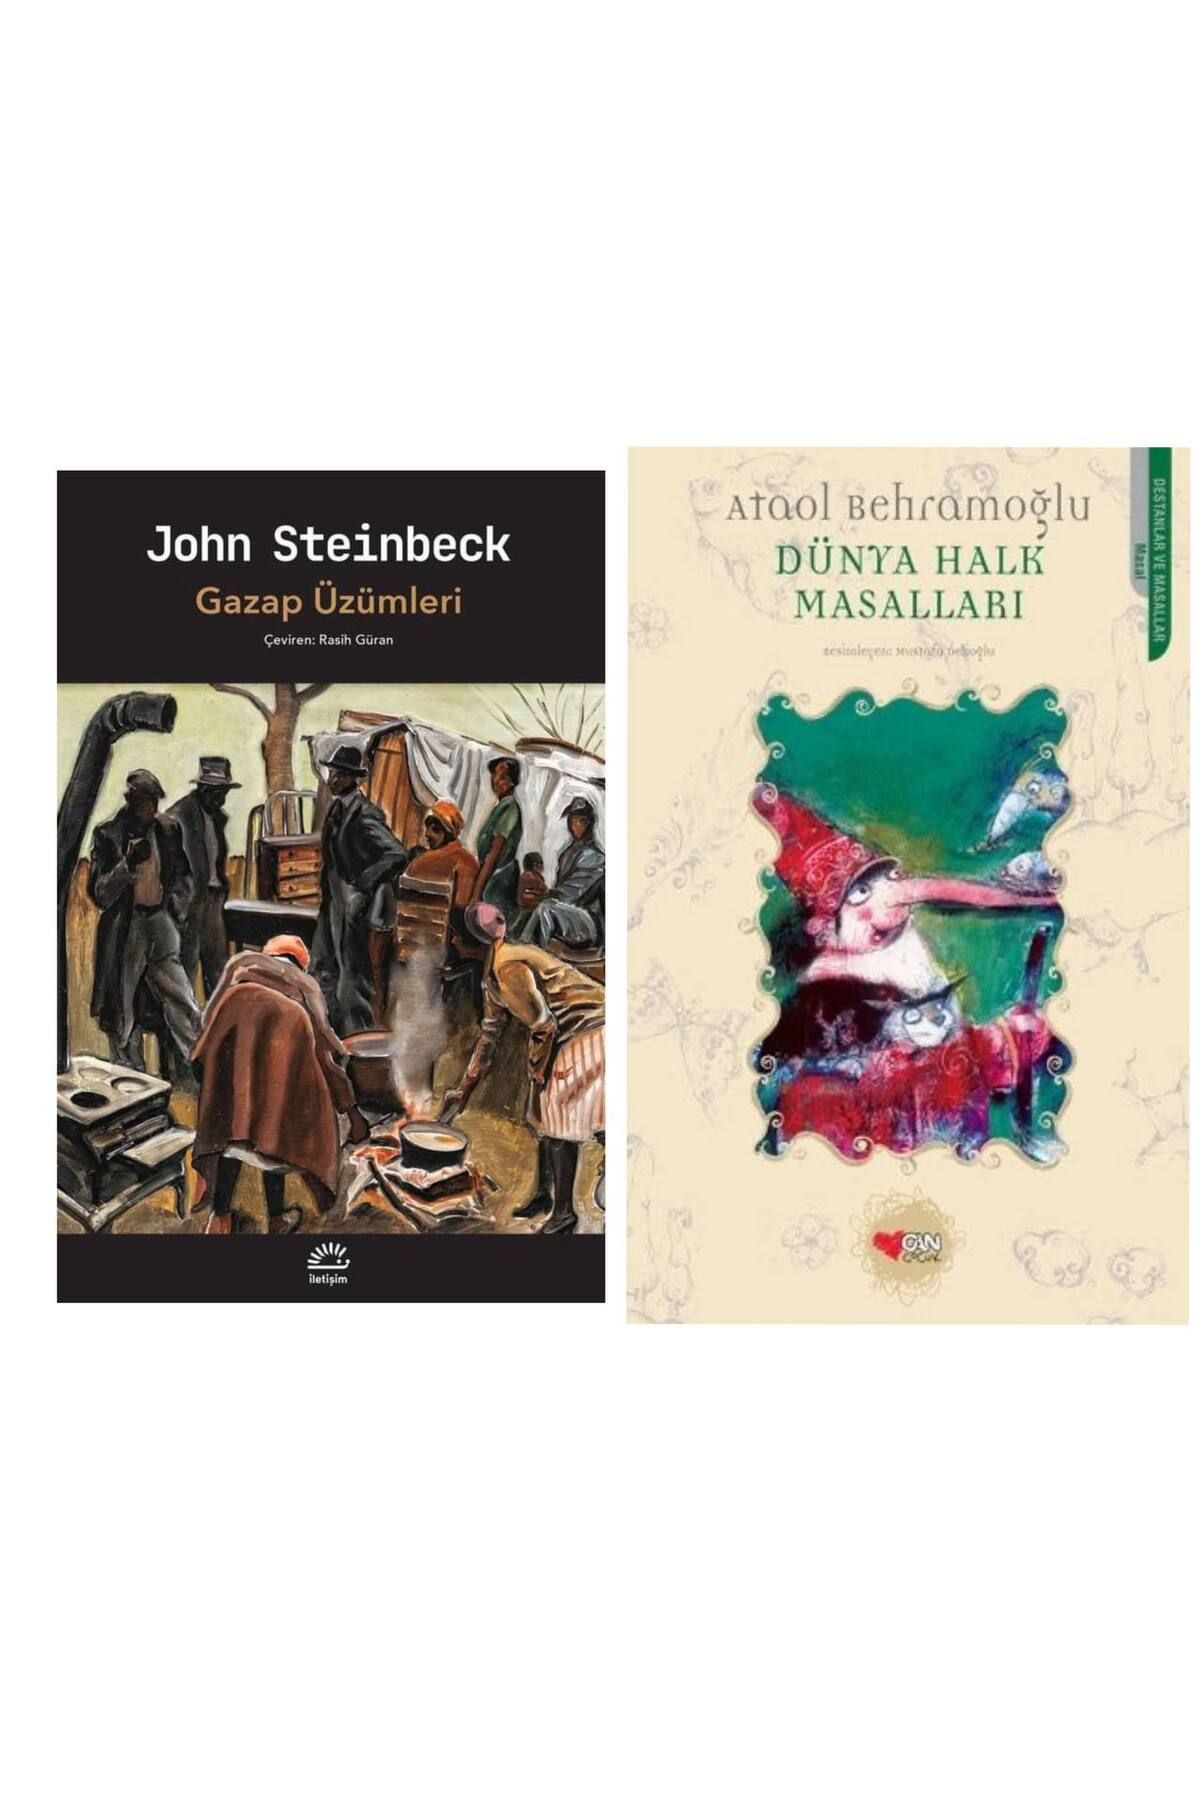 İletişim Yayınları Gazap Üzümleri - John Steinbeck - Dünya Halk Masalları - Ataol Behramoğlu